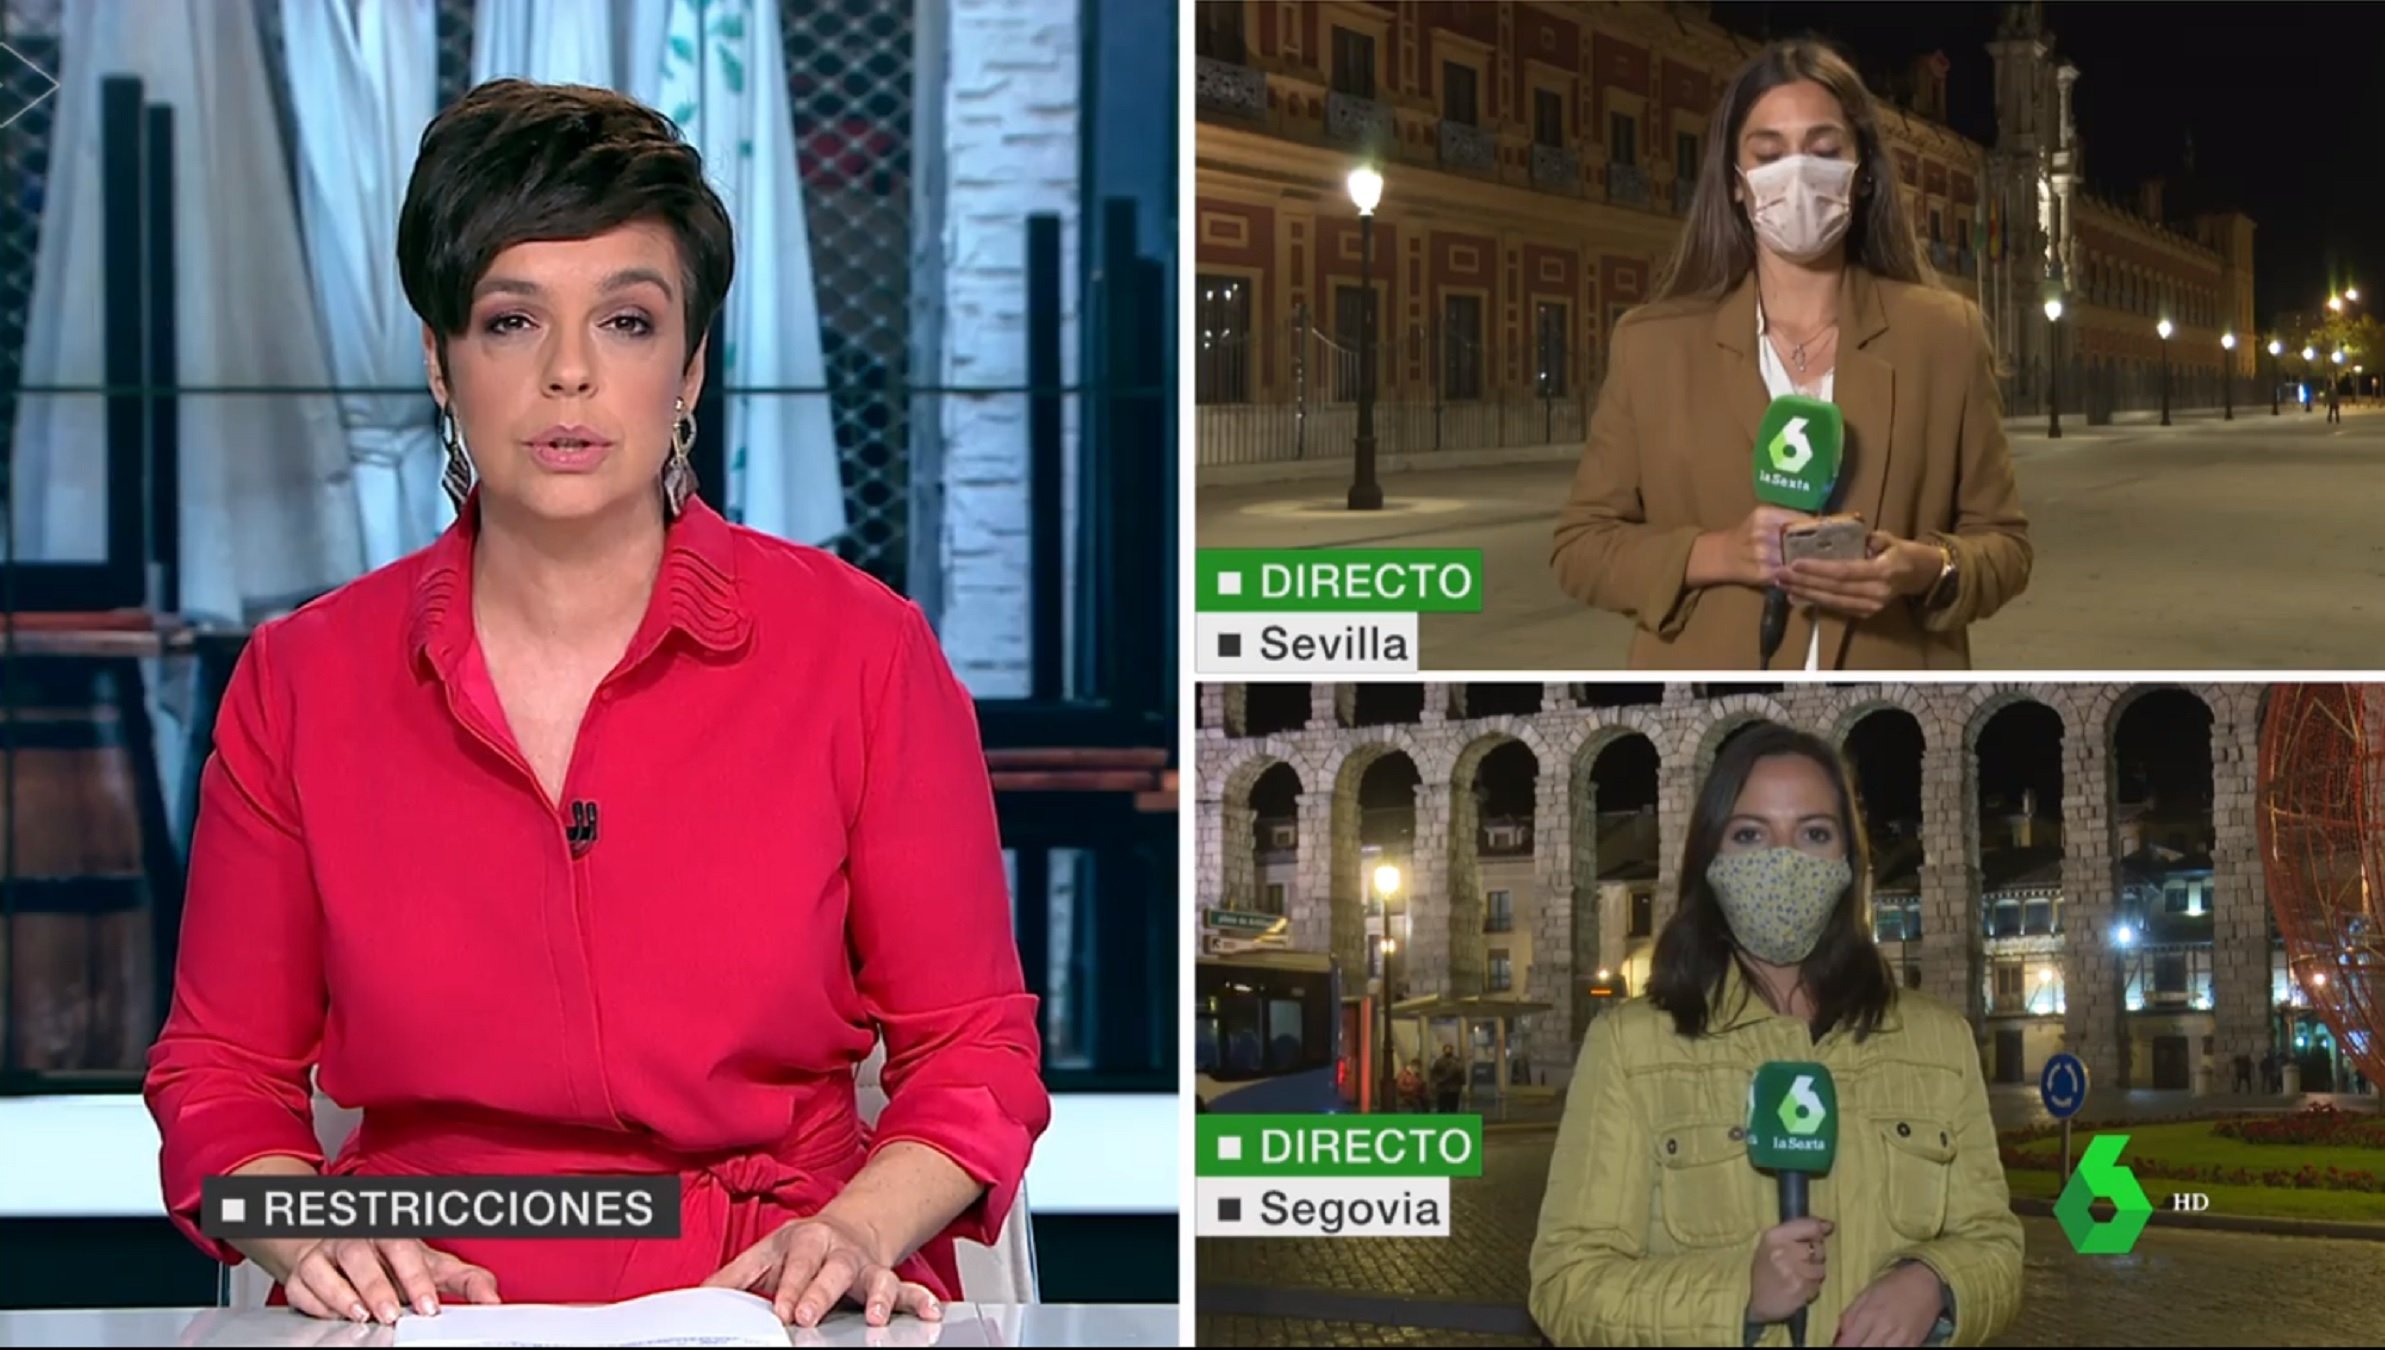 Inédito gesto en directo de la catalana Cristina Villanueva: mascarilla en plató